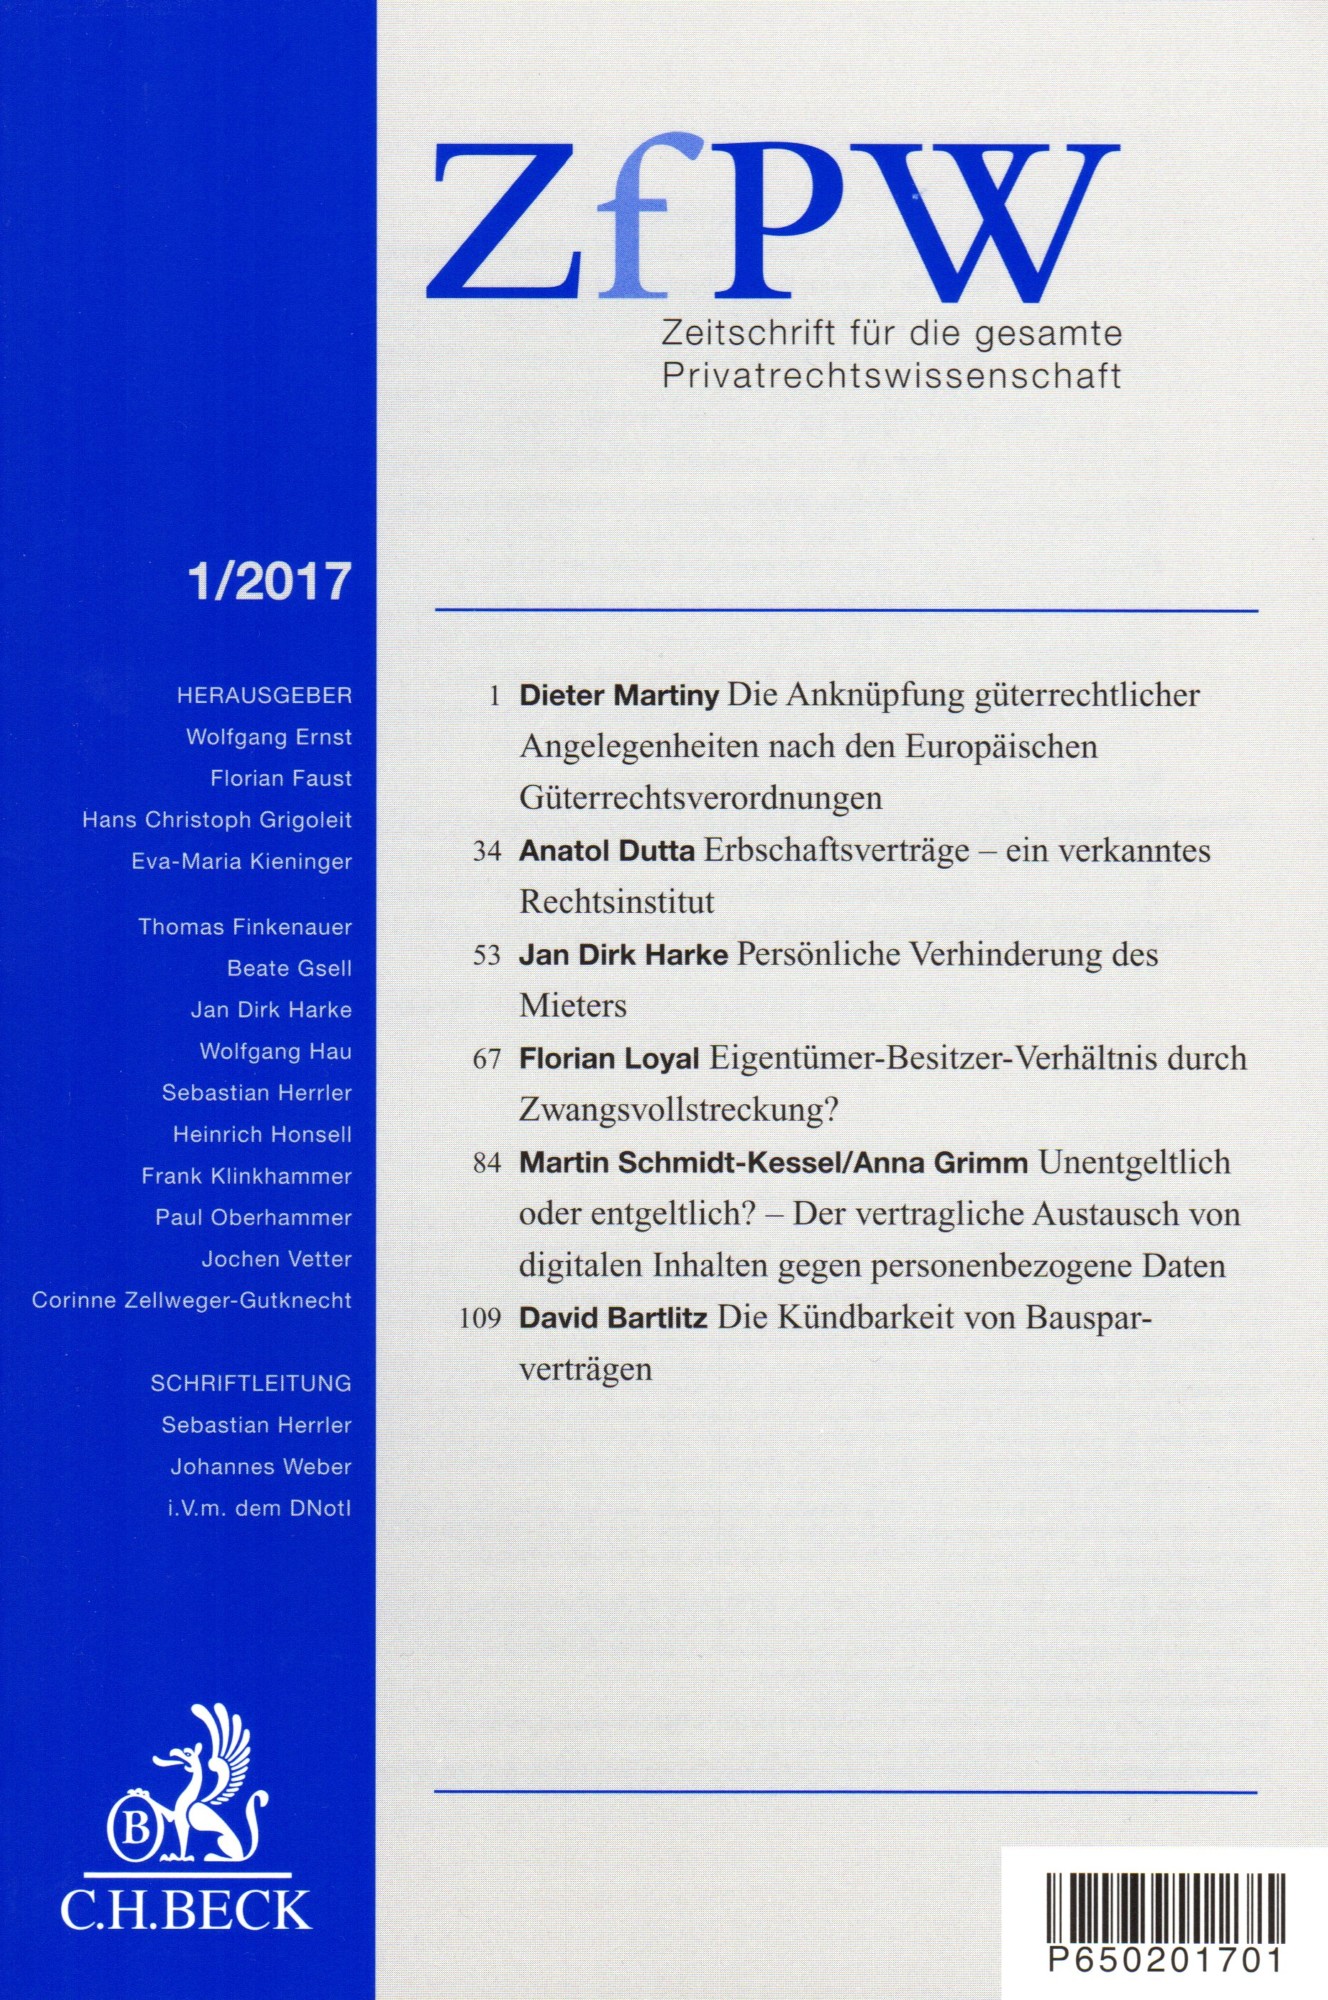 Zum Artikel "Soeben erschienen: Bartlitz, Die Kündbarkeit von Bausparverträgen, ZfPW 2017, S. 109 ff."